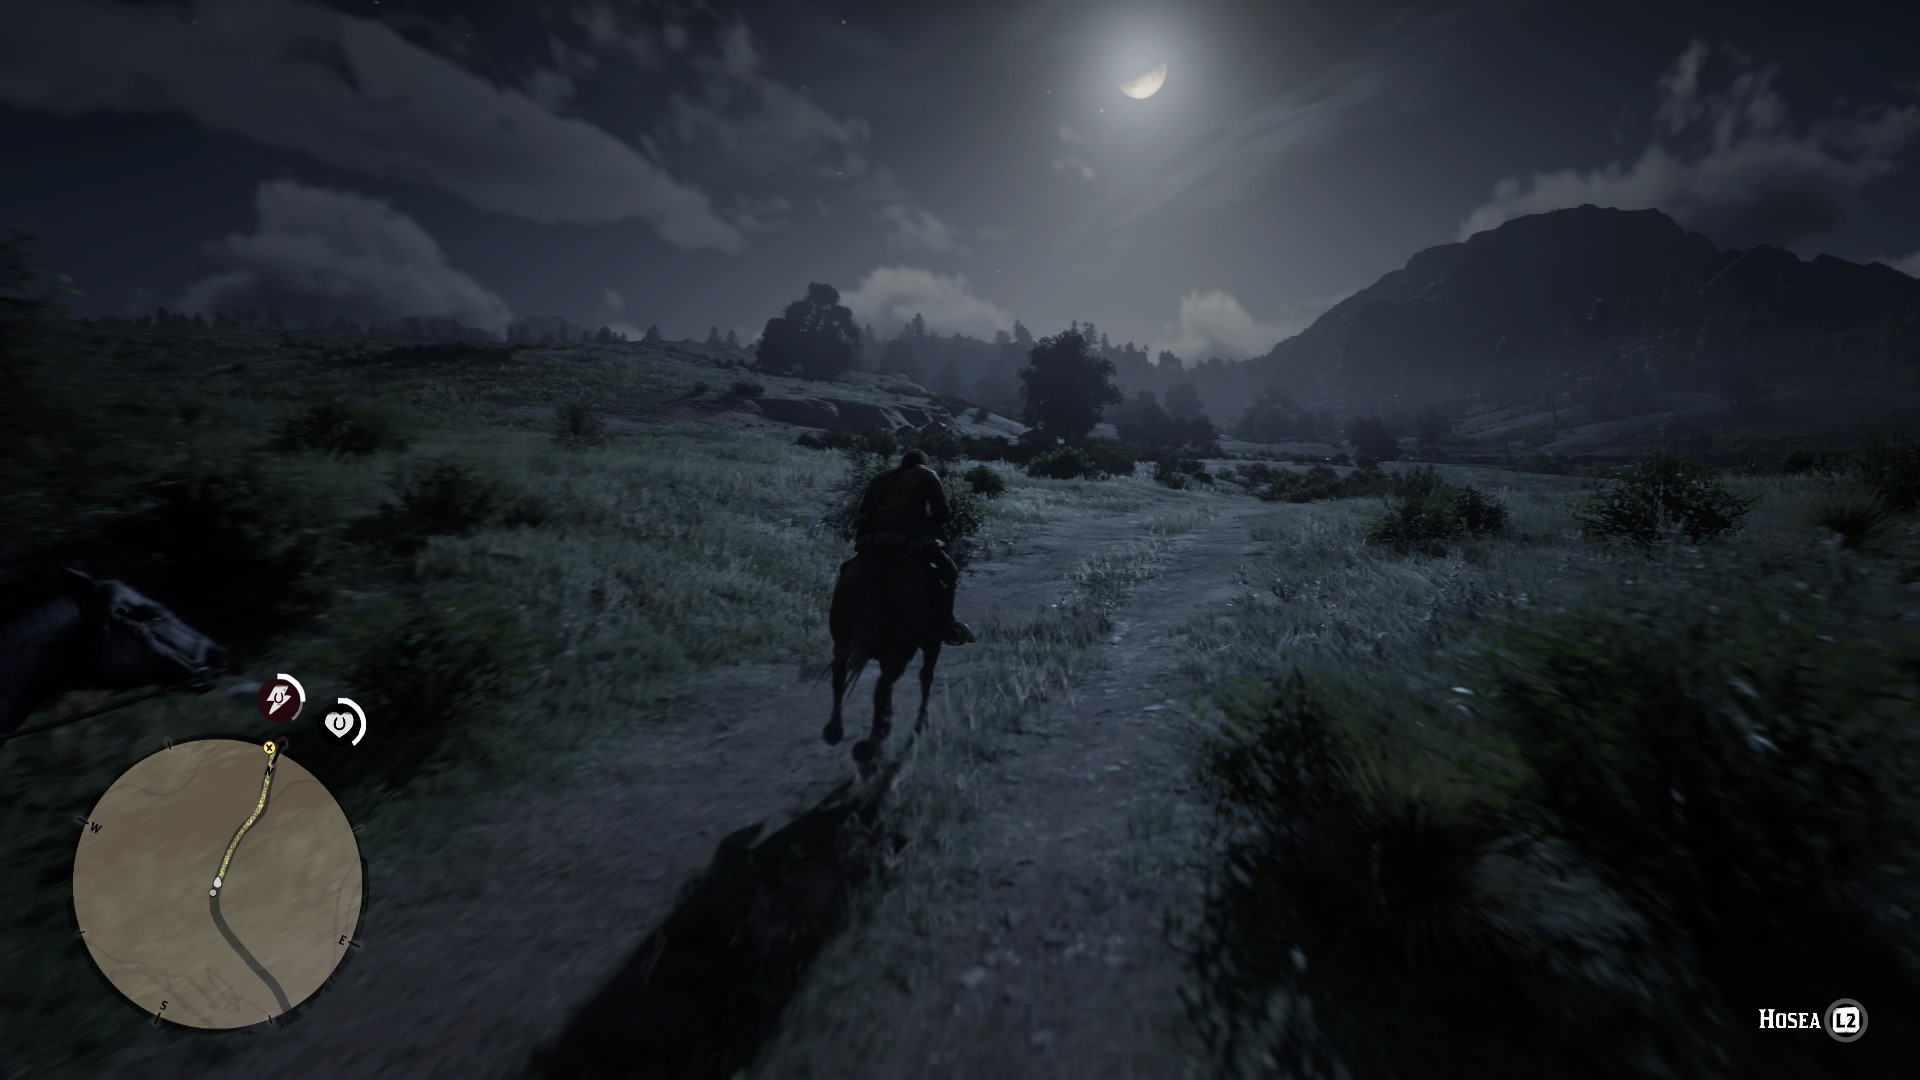  Lobos aullando, truenos en la lejanía, y la luz de la luna bañando el paisaje mientras cabalgamos